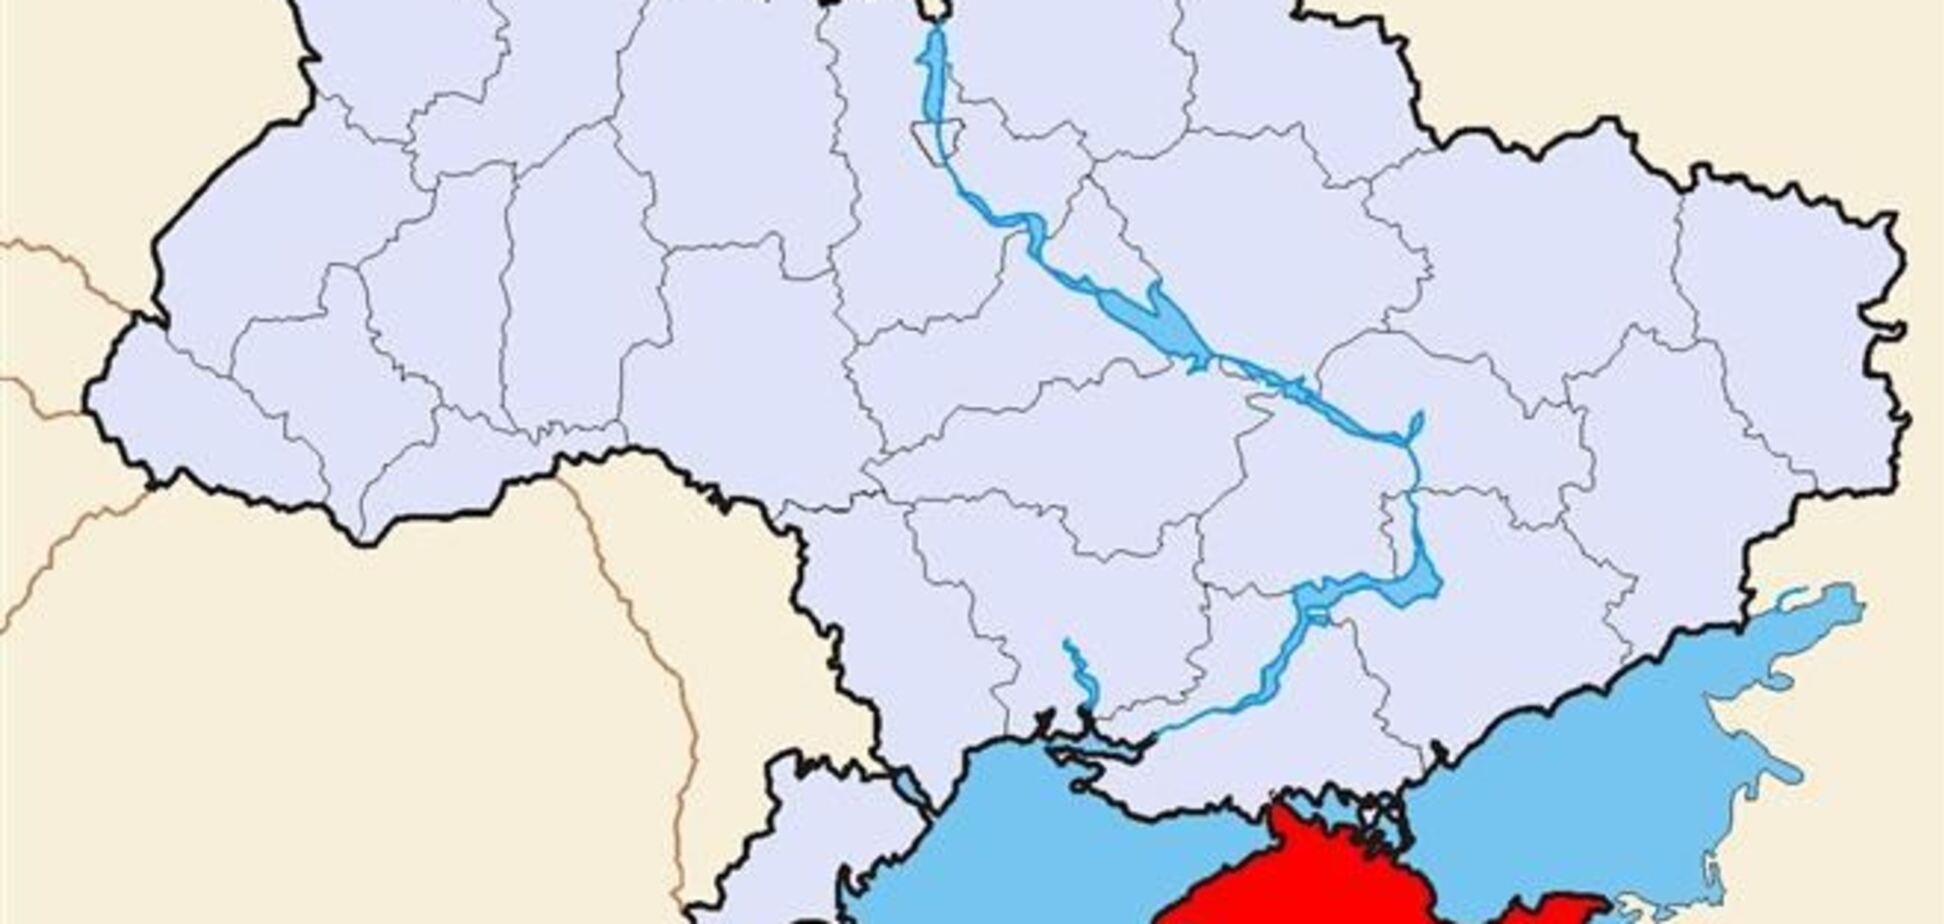 Незаконный референдум в Крыму обойдется в 16 млн грн